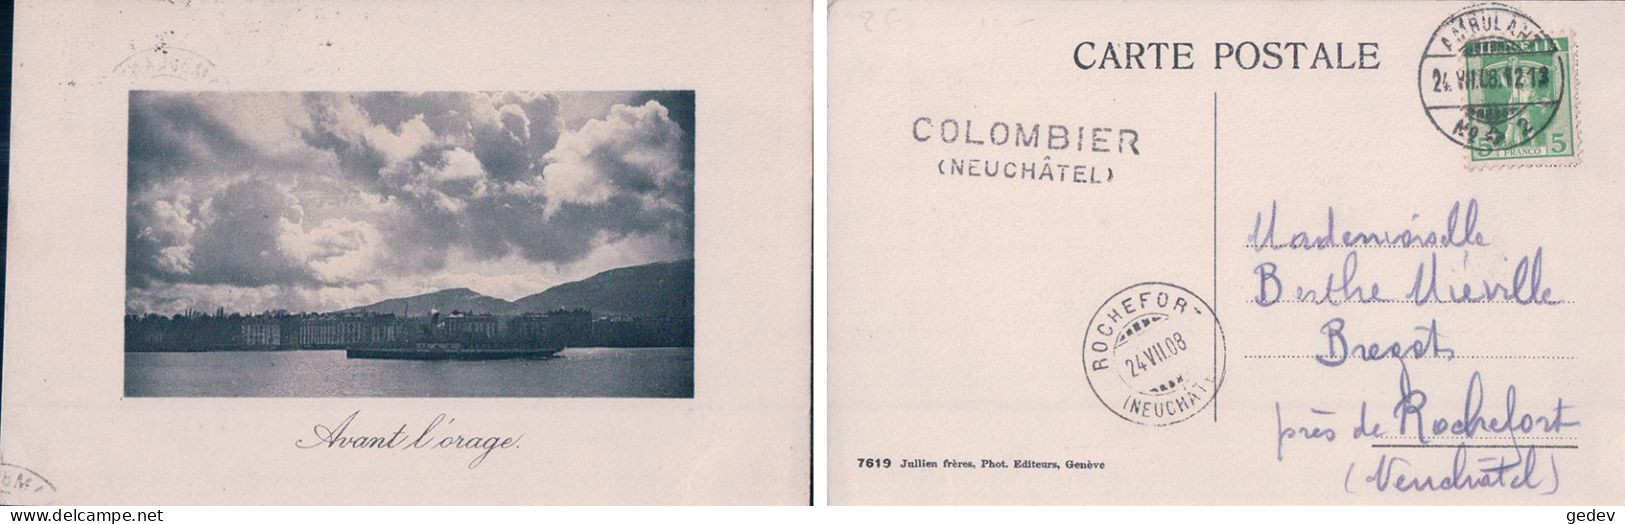 Genève Avant L'orage, Cachet Linéaire COLOMBIER (NEUCHATEL) (24.7.1908) - Colombier